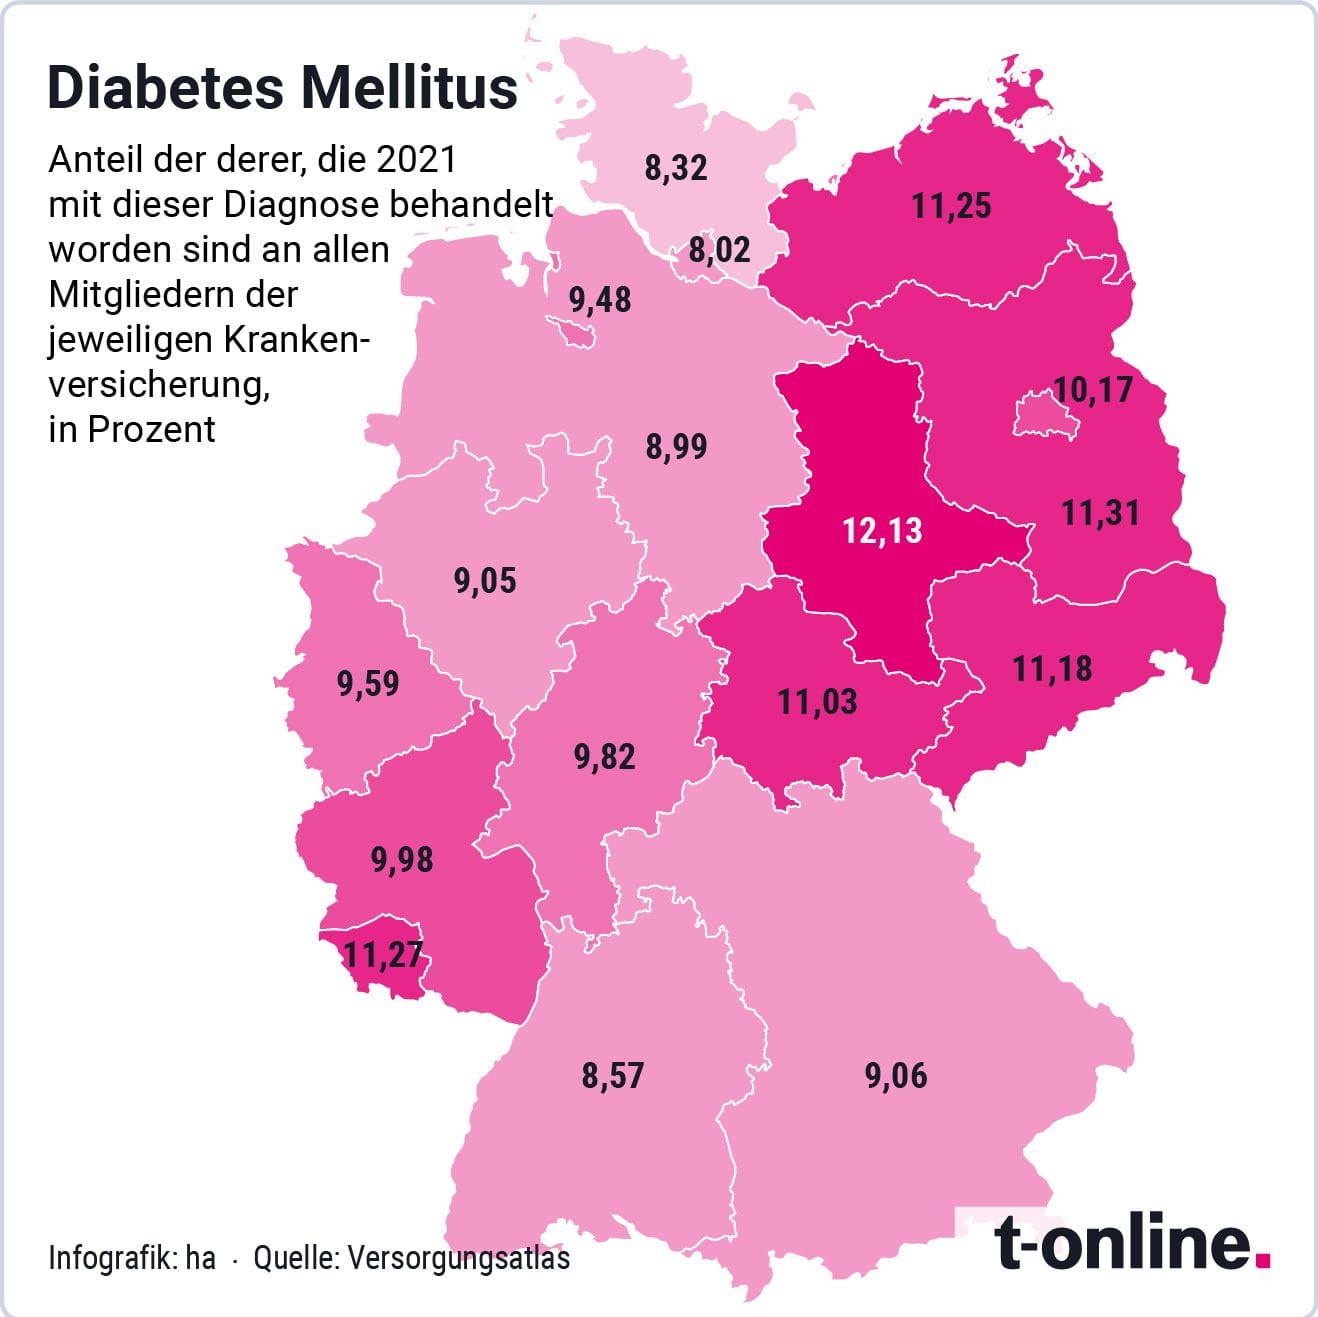 Die Karte zeigt die Verteilung der Diabetes-Patienten in Ost und West.